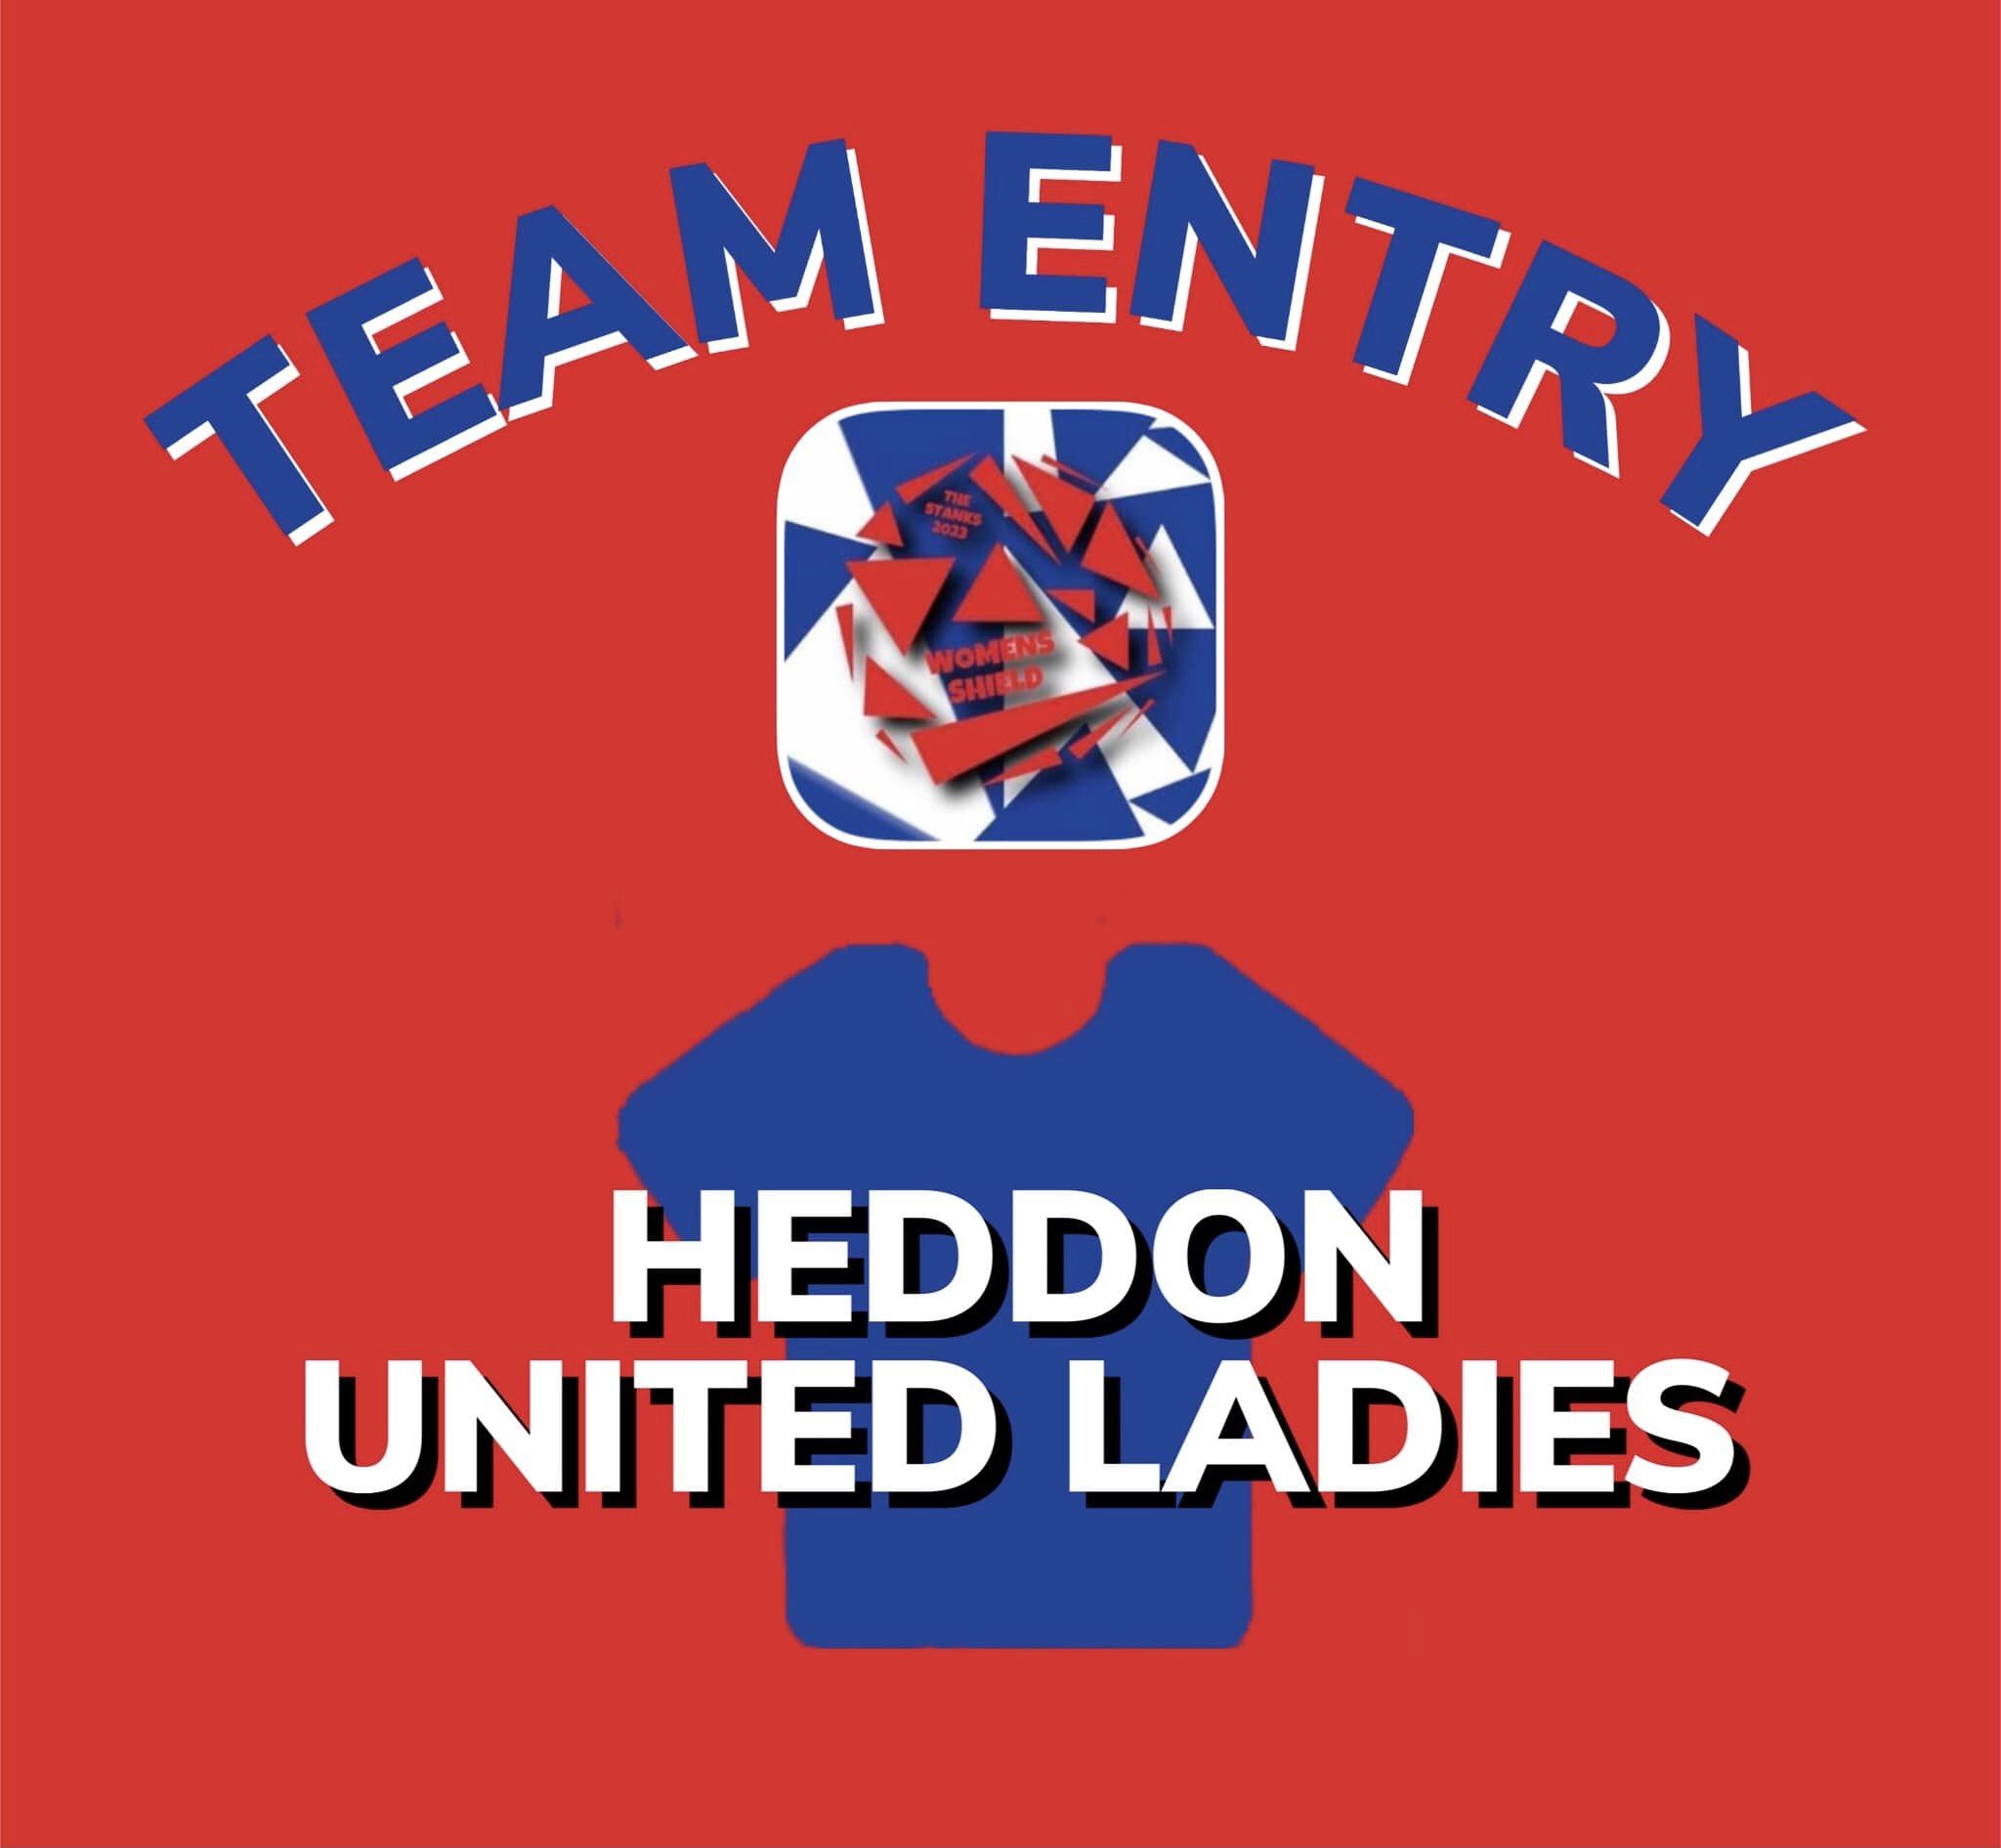 Heddon United Ladies